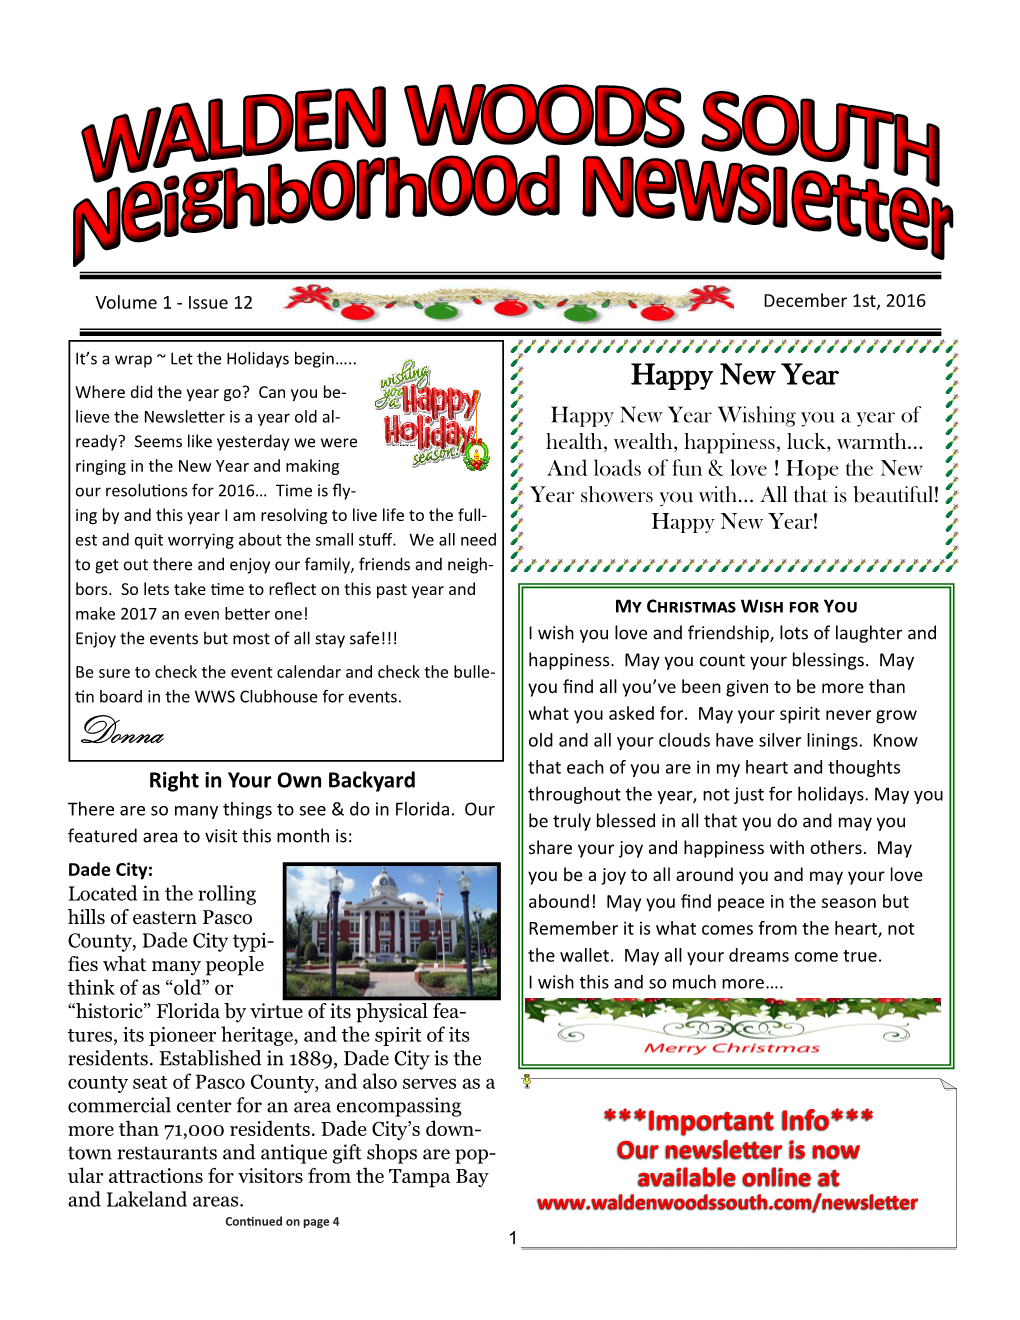 December 2016 Walden Woods South Neighborhood Newsletter